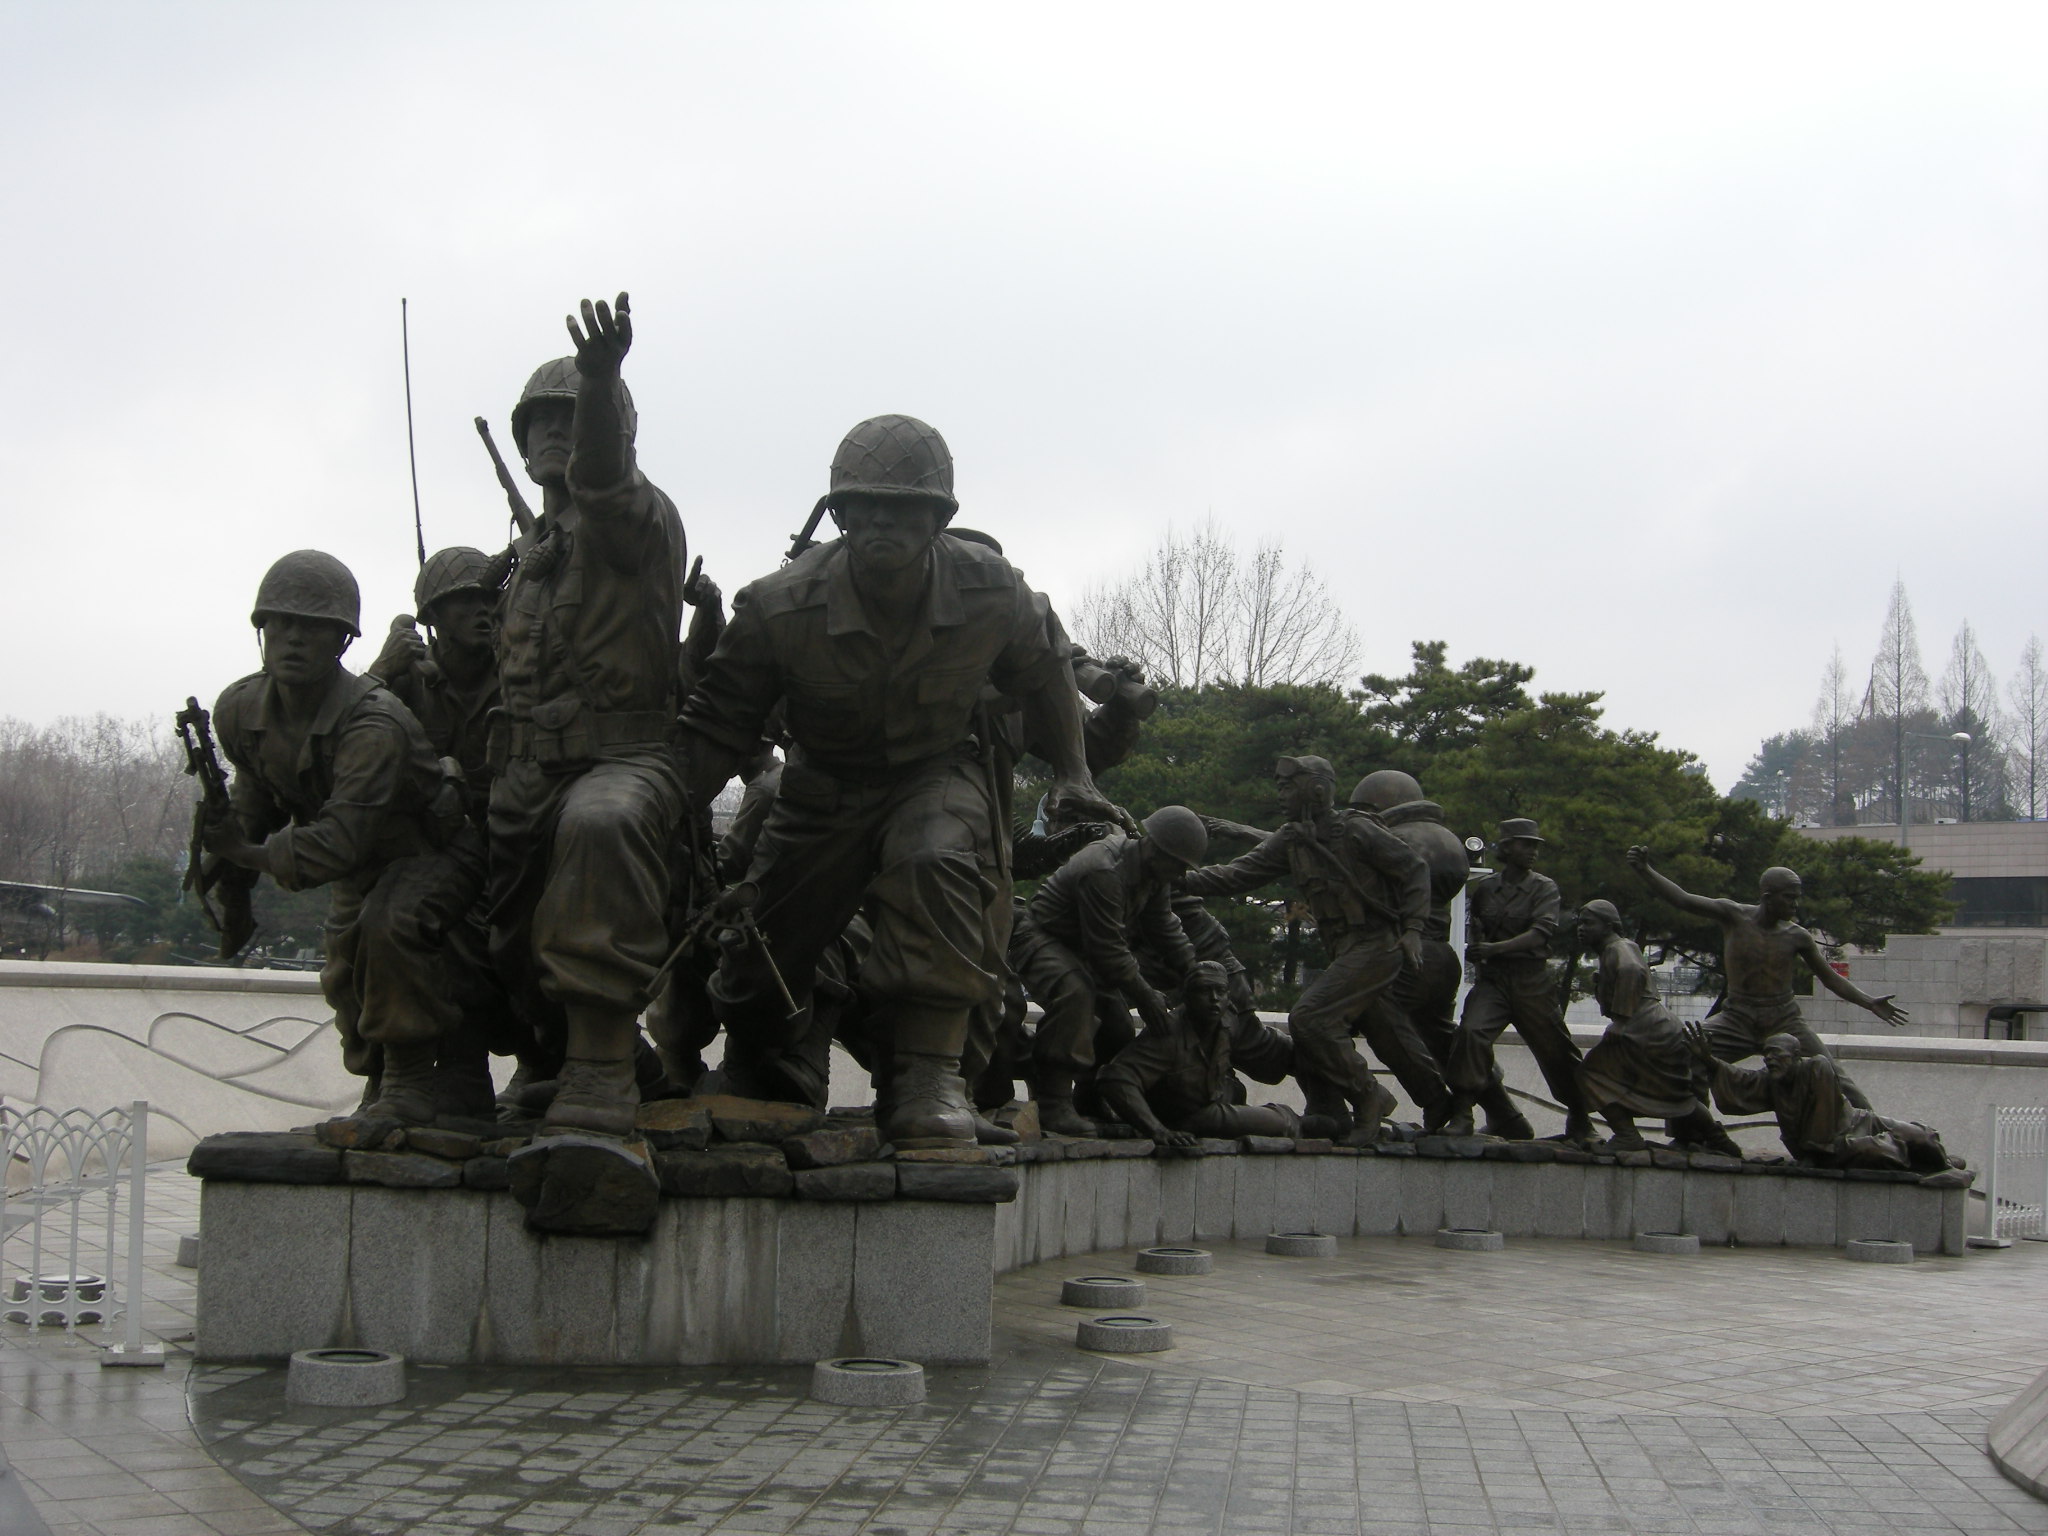 10 สถานที่ท่องเที่ยวสำคัญในเกาหลี-อนุสรณ์สถานสงครามเกาหลี